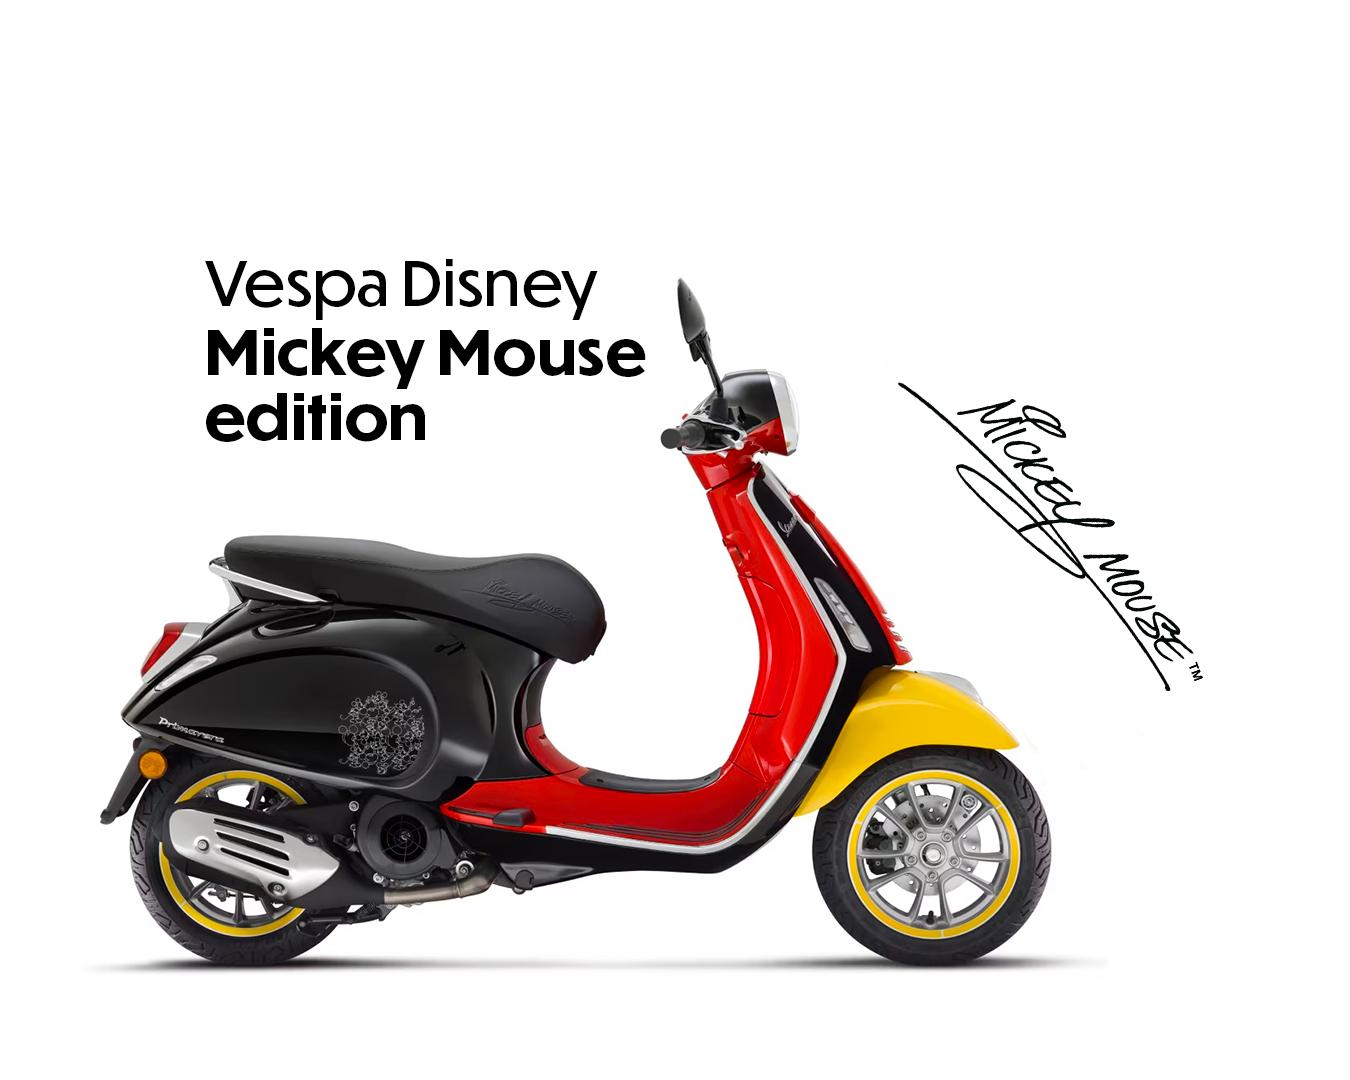 Oslavte Vánoce s Vespa Disney Mickey Mouse Limited Edition!